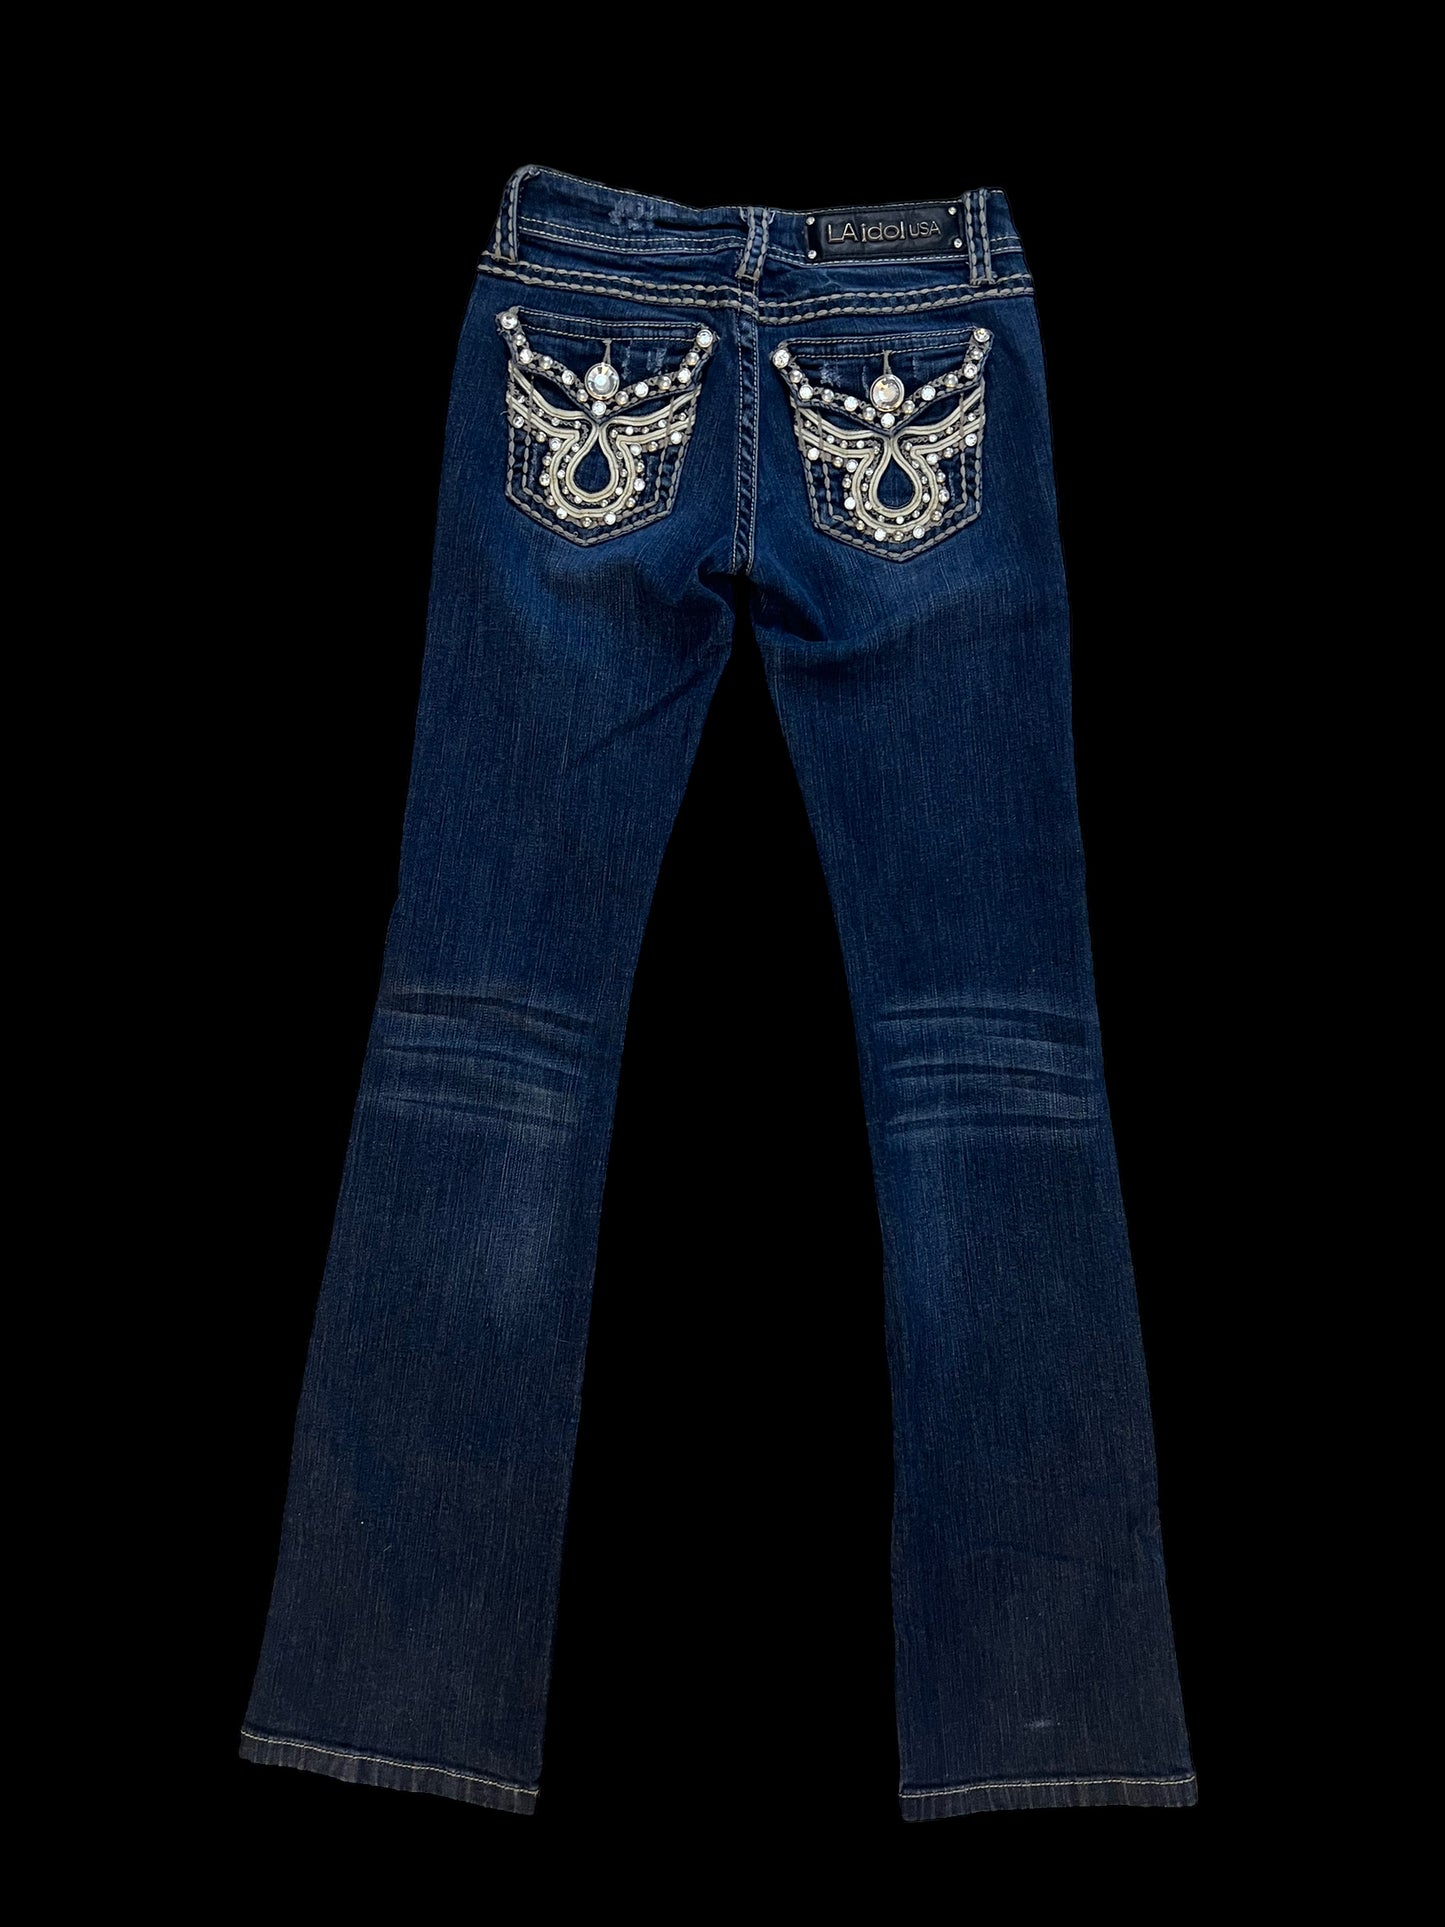 LA idol embellished jeans